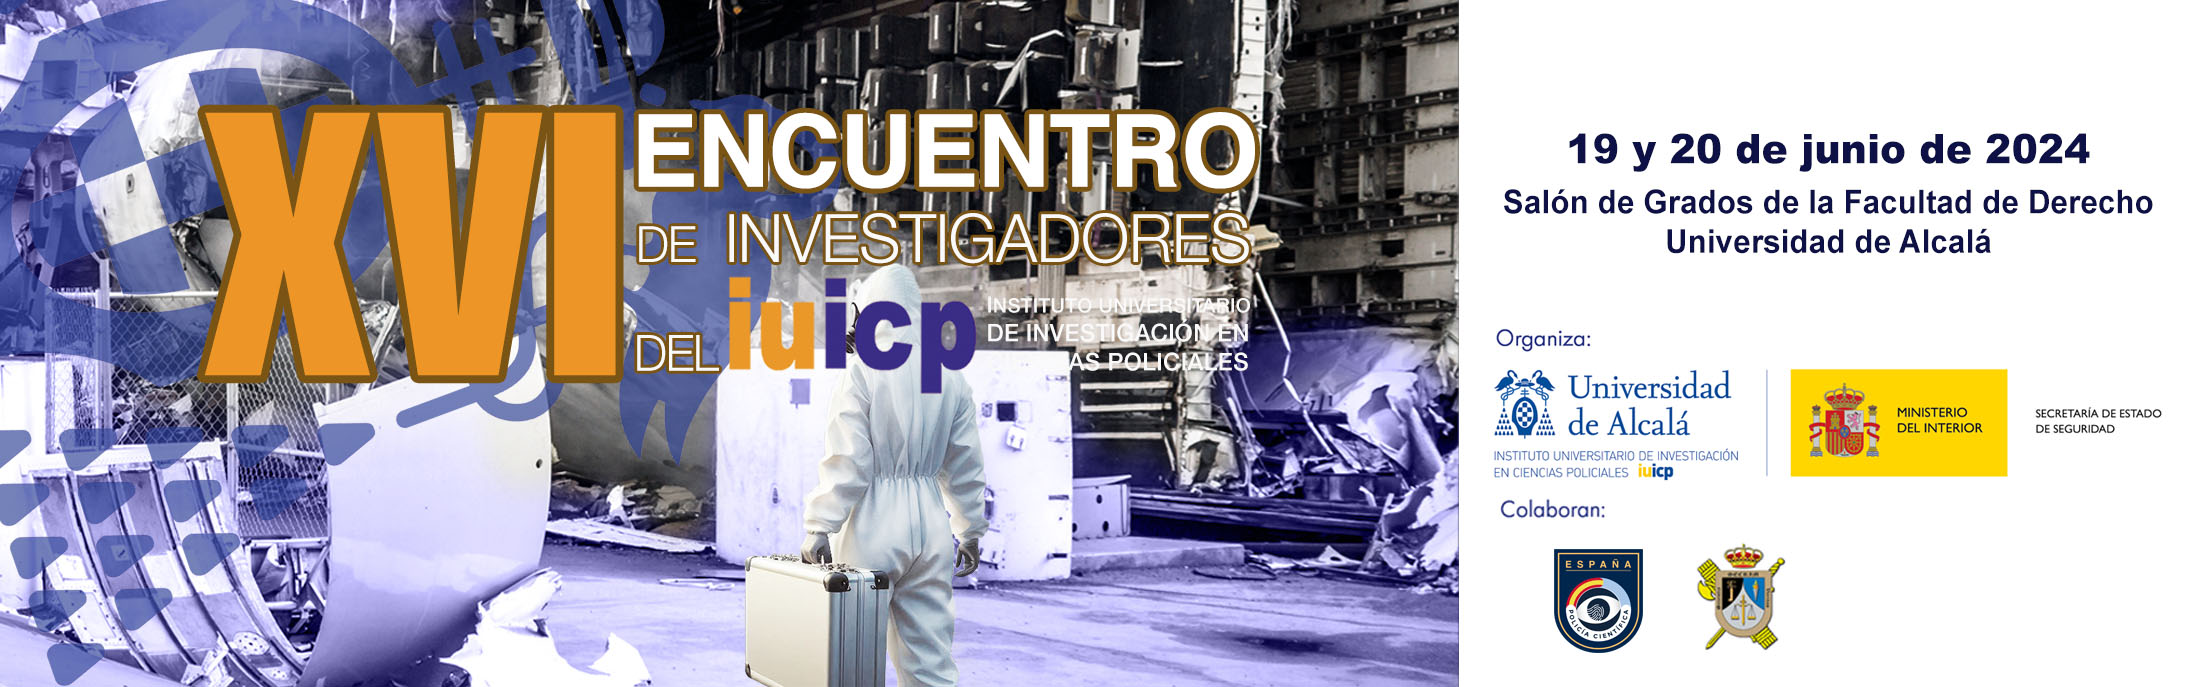 XVI Encuentro de Investigadores del IUICP